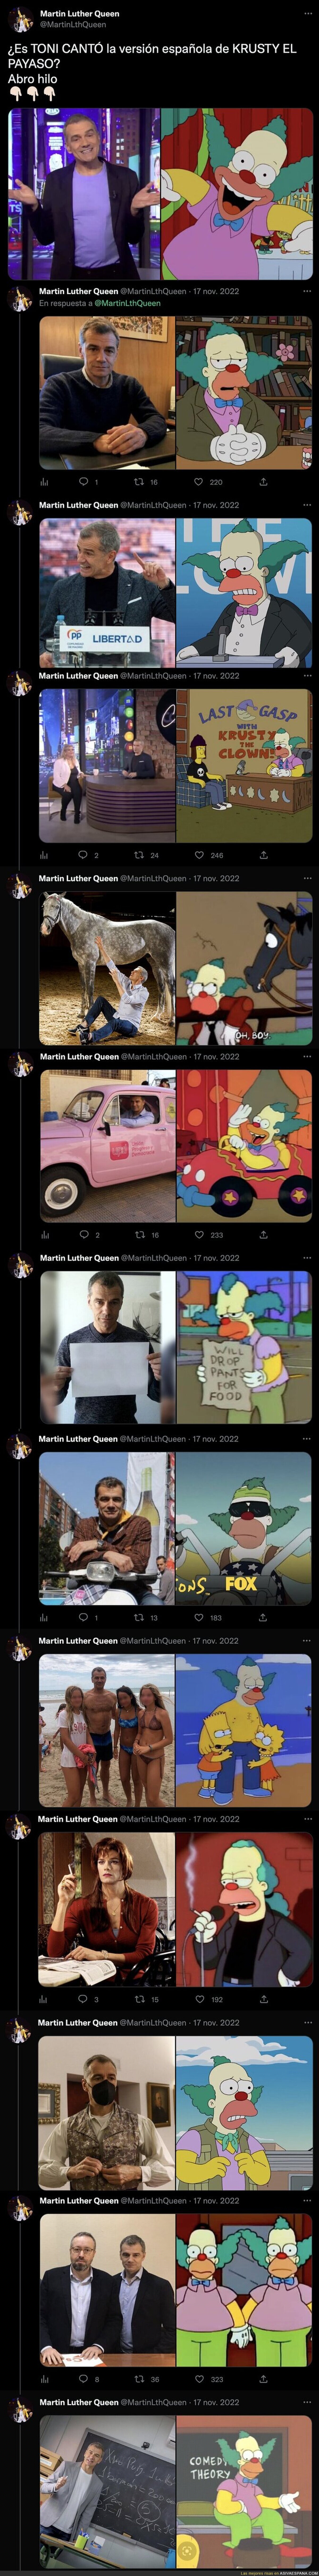 Todas estas imágenes indican que Krusty el Payaso podría estar basado en Toni Cantó